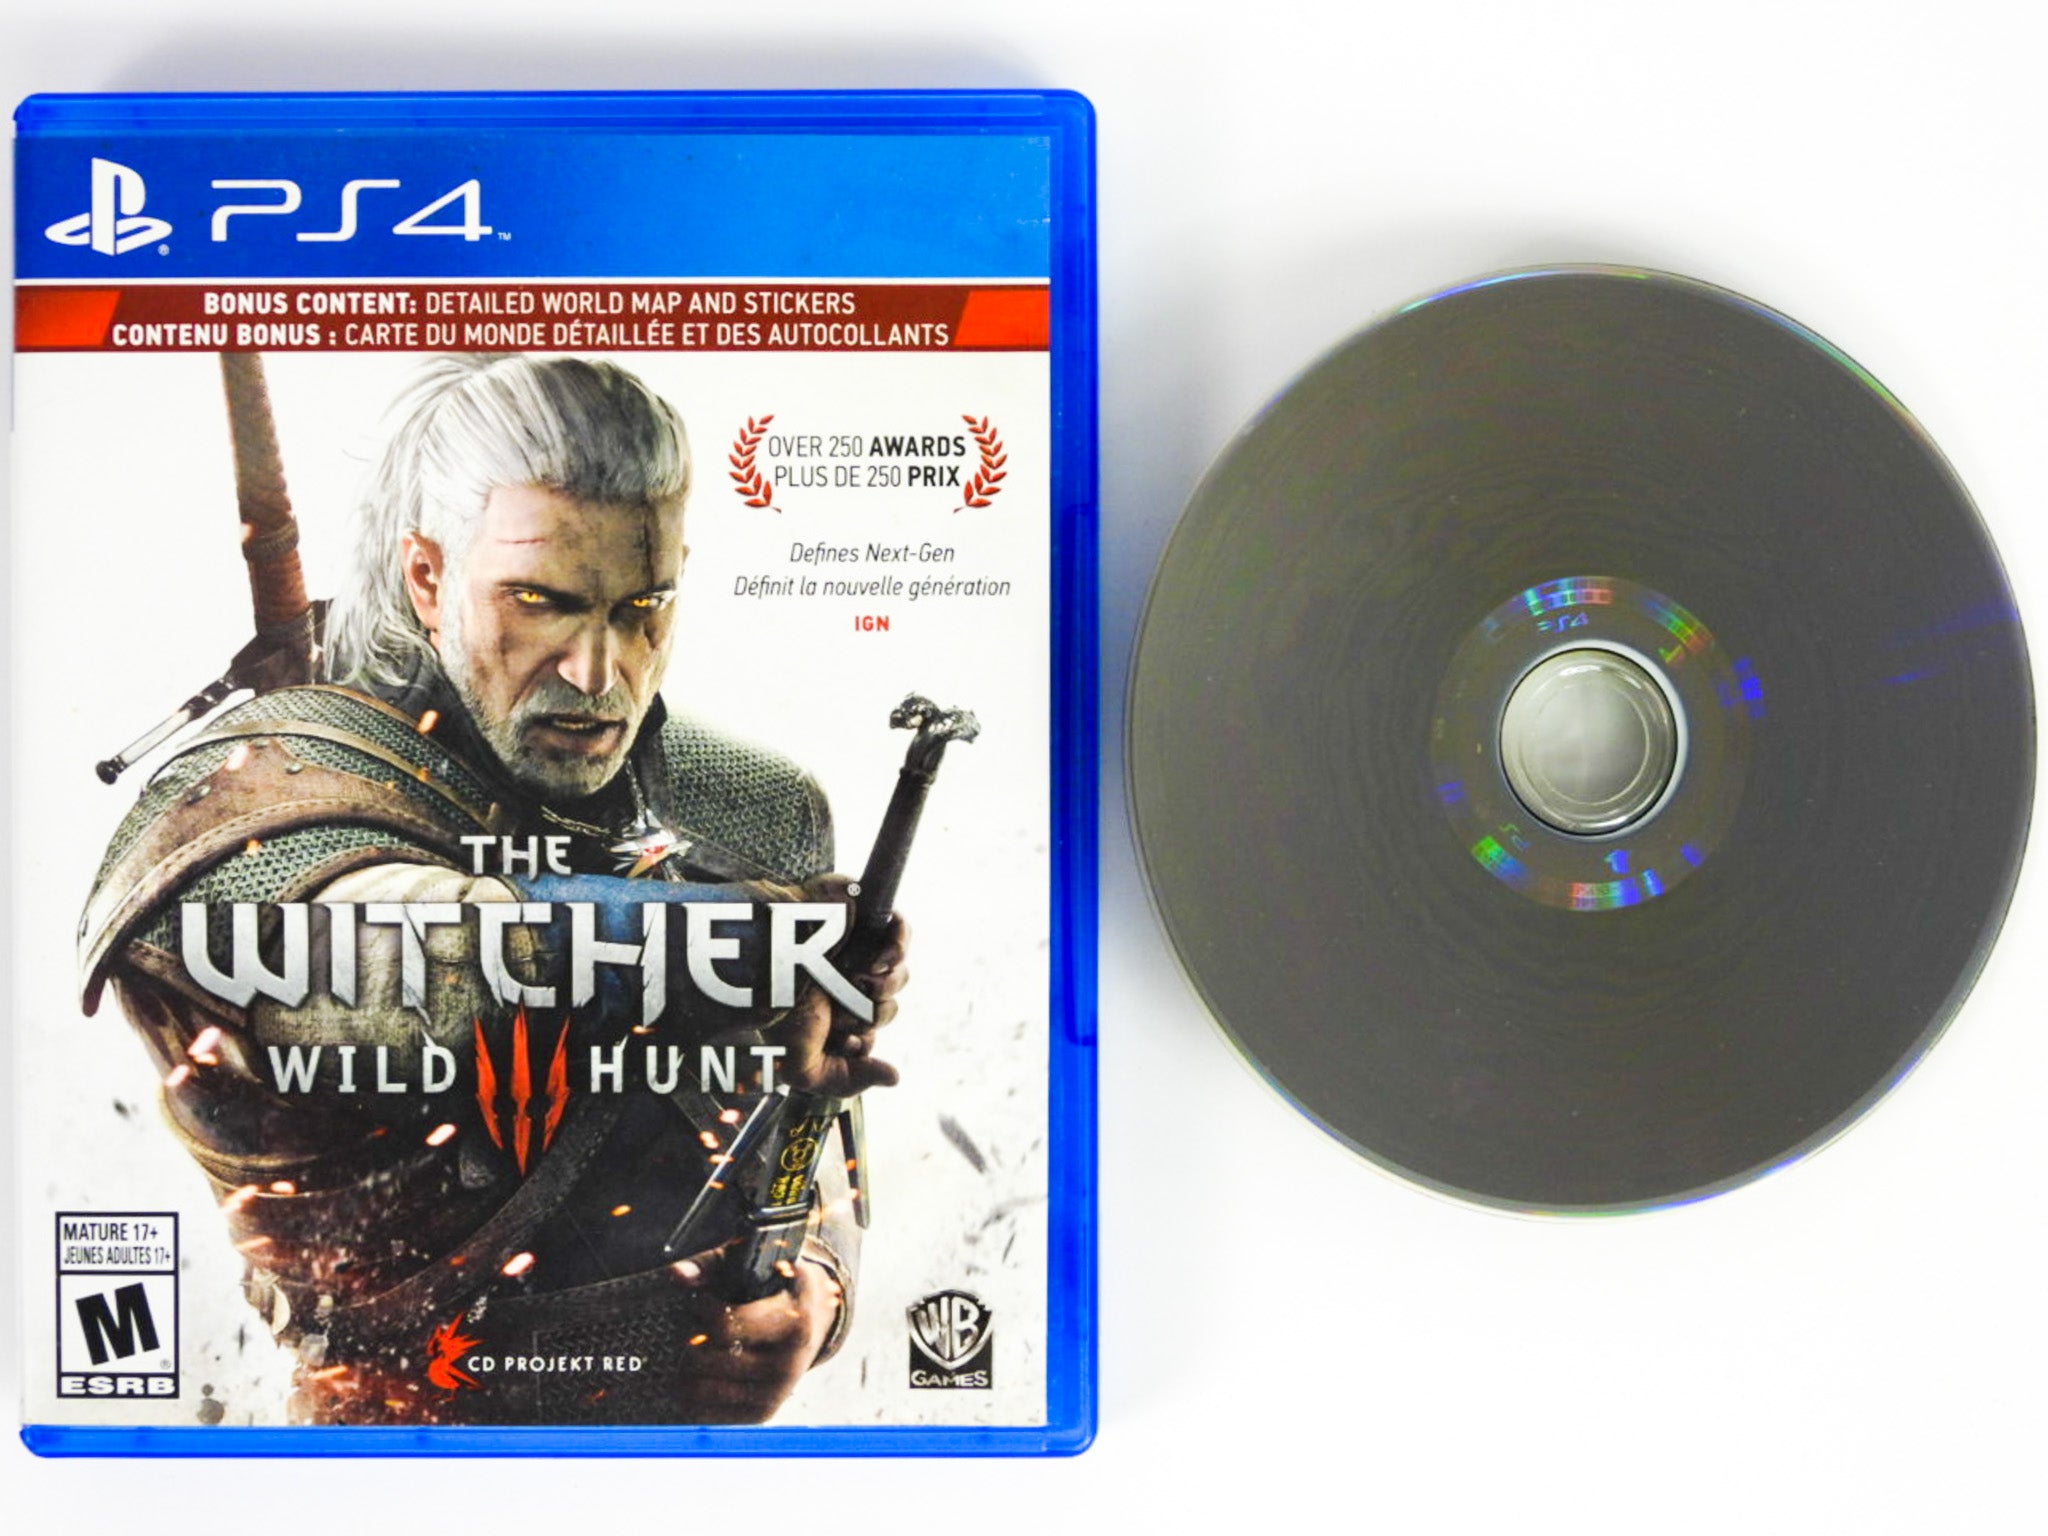 The Witcher 3 Wild Hunt Sony PS4 - Bonus Content